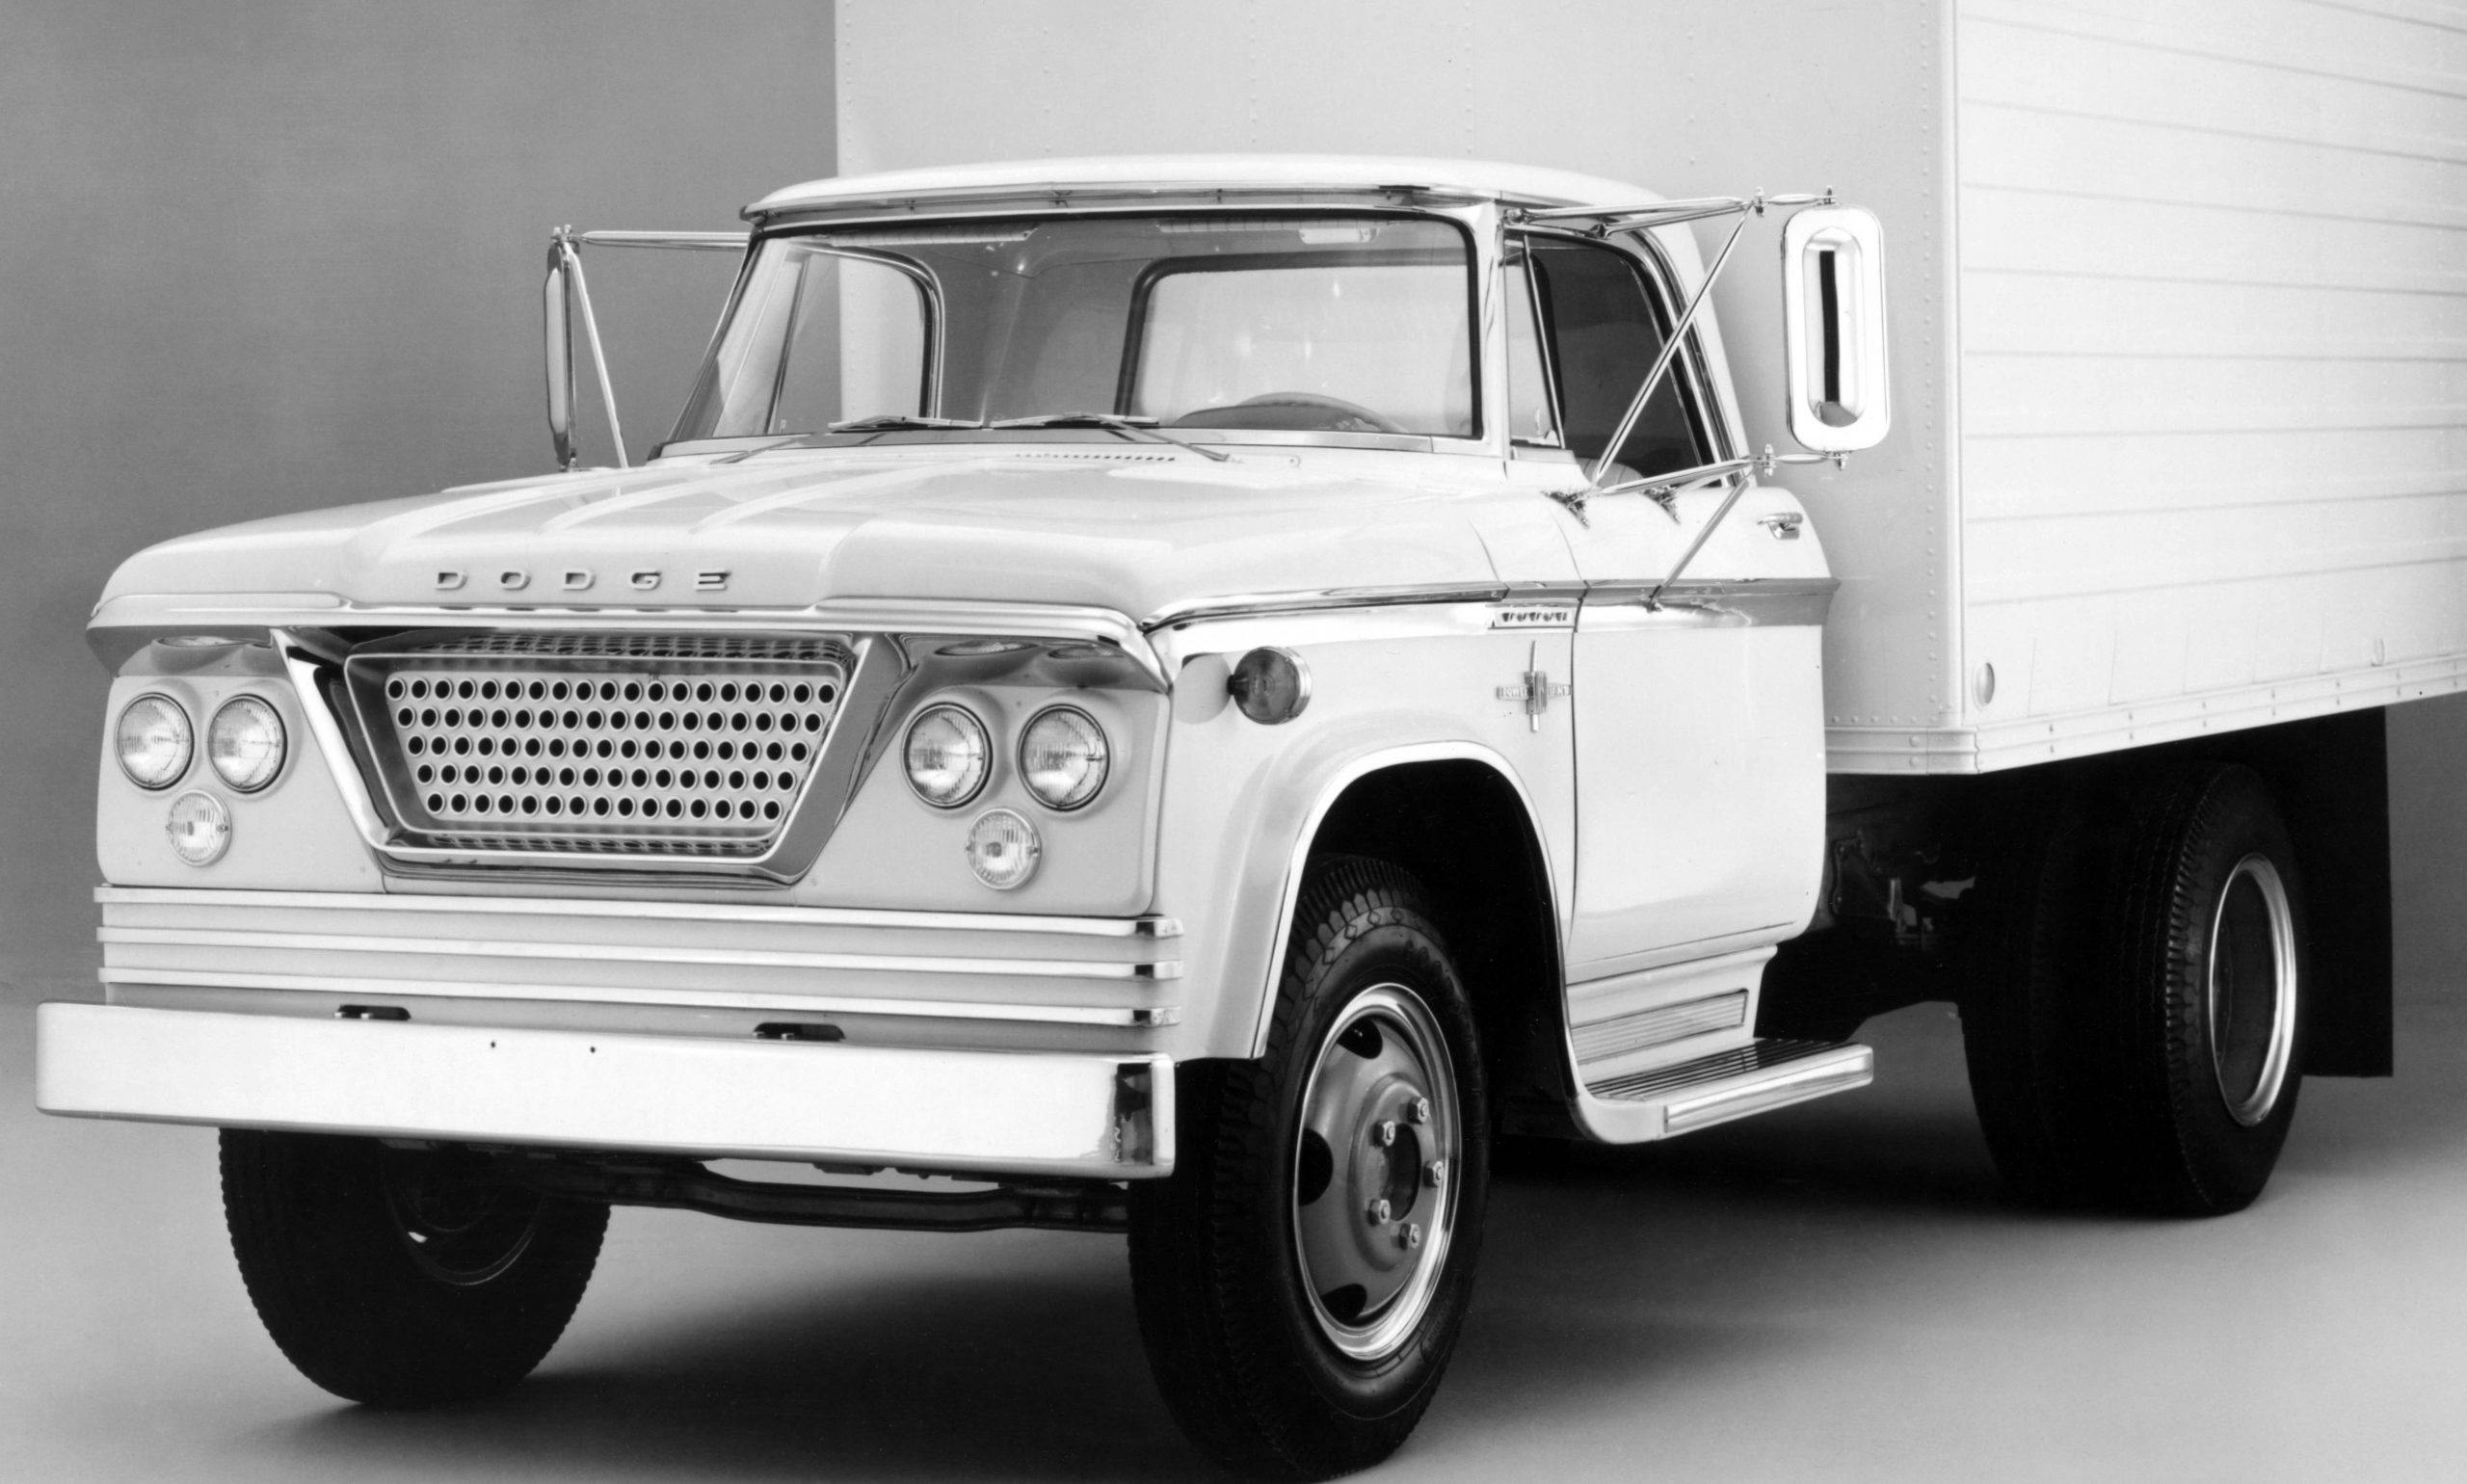 Chrysler Turbine history - 1960 Dodge Truck Turbine front left